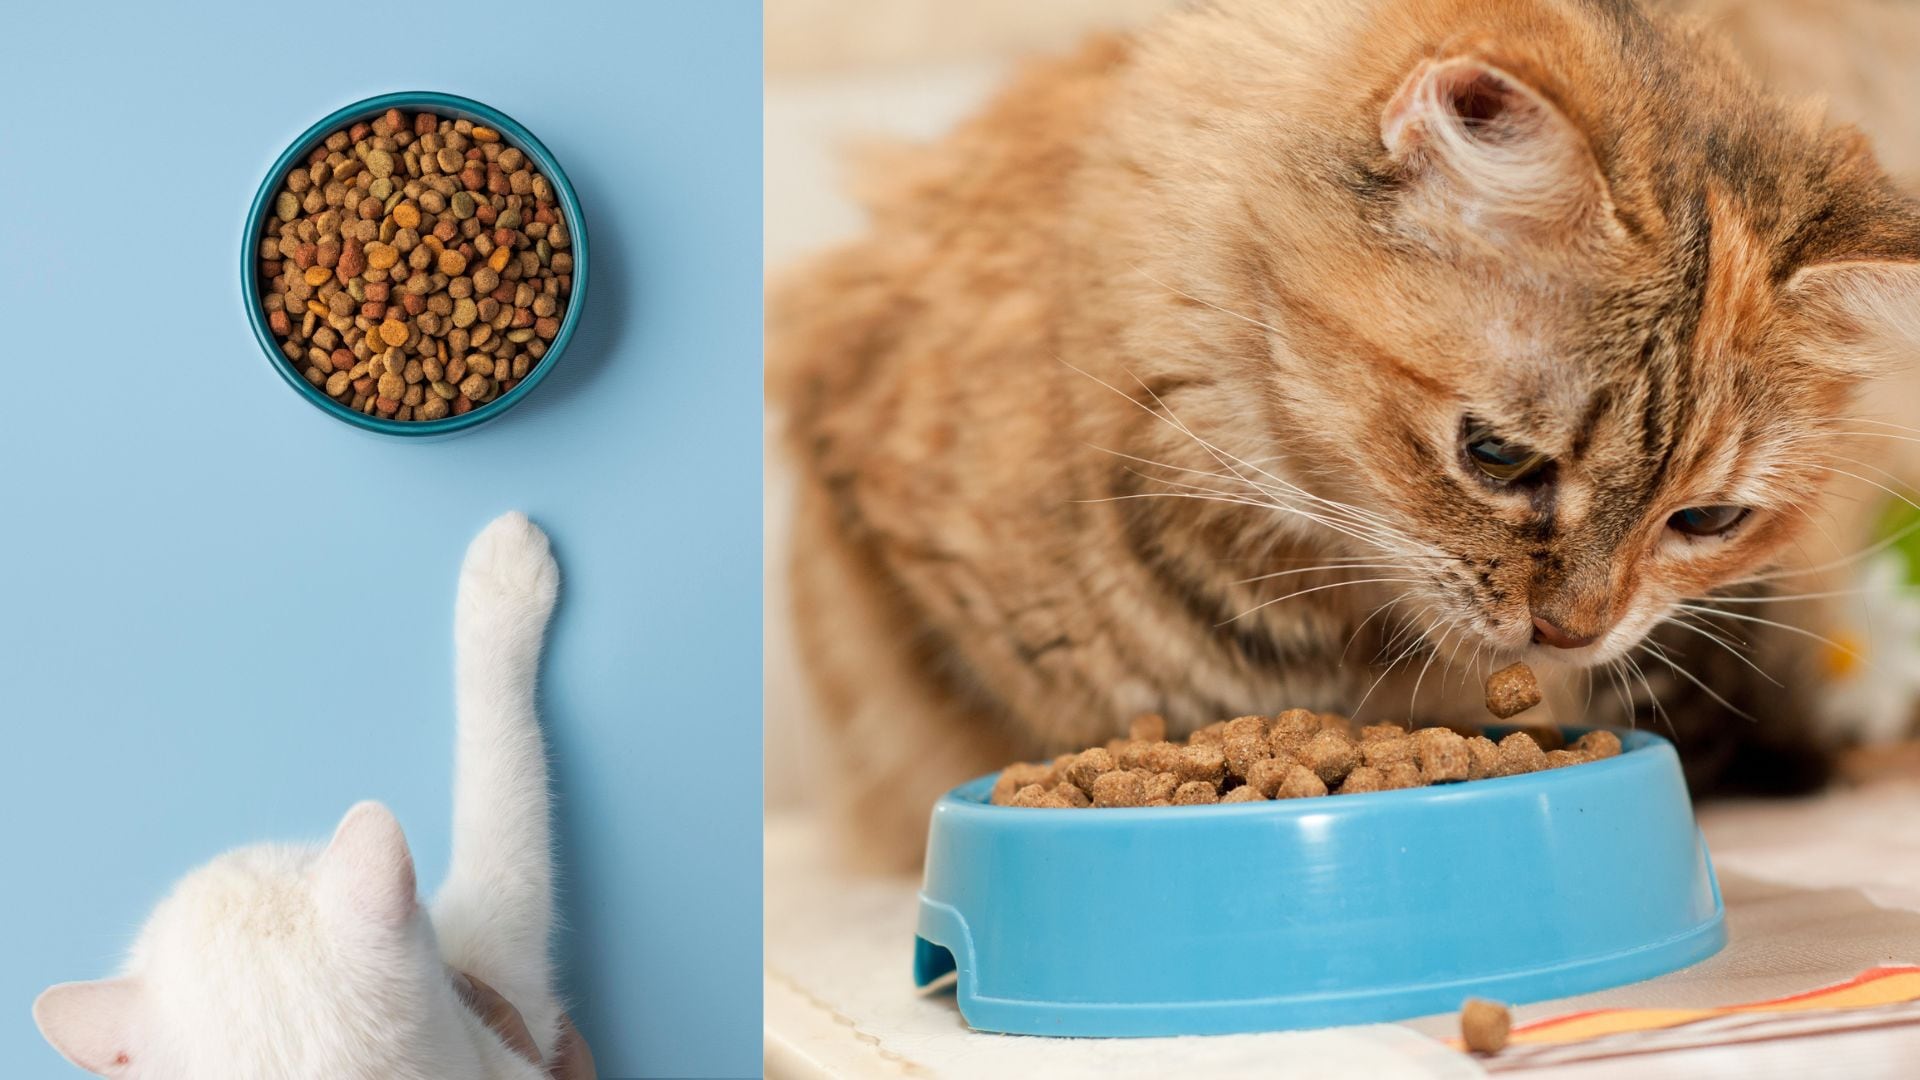 Los gatos a menudo piden comida a pesar de tener sus platos llenos. La elección del plato adecuado y servir porciones frescas puede mejorar su alimentación.